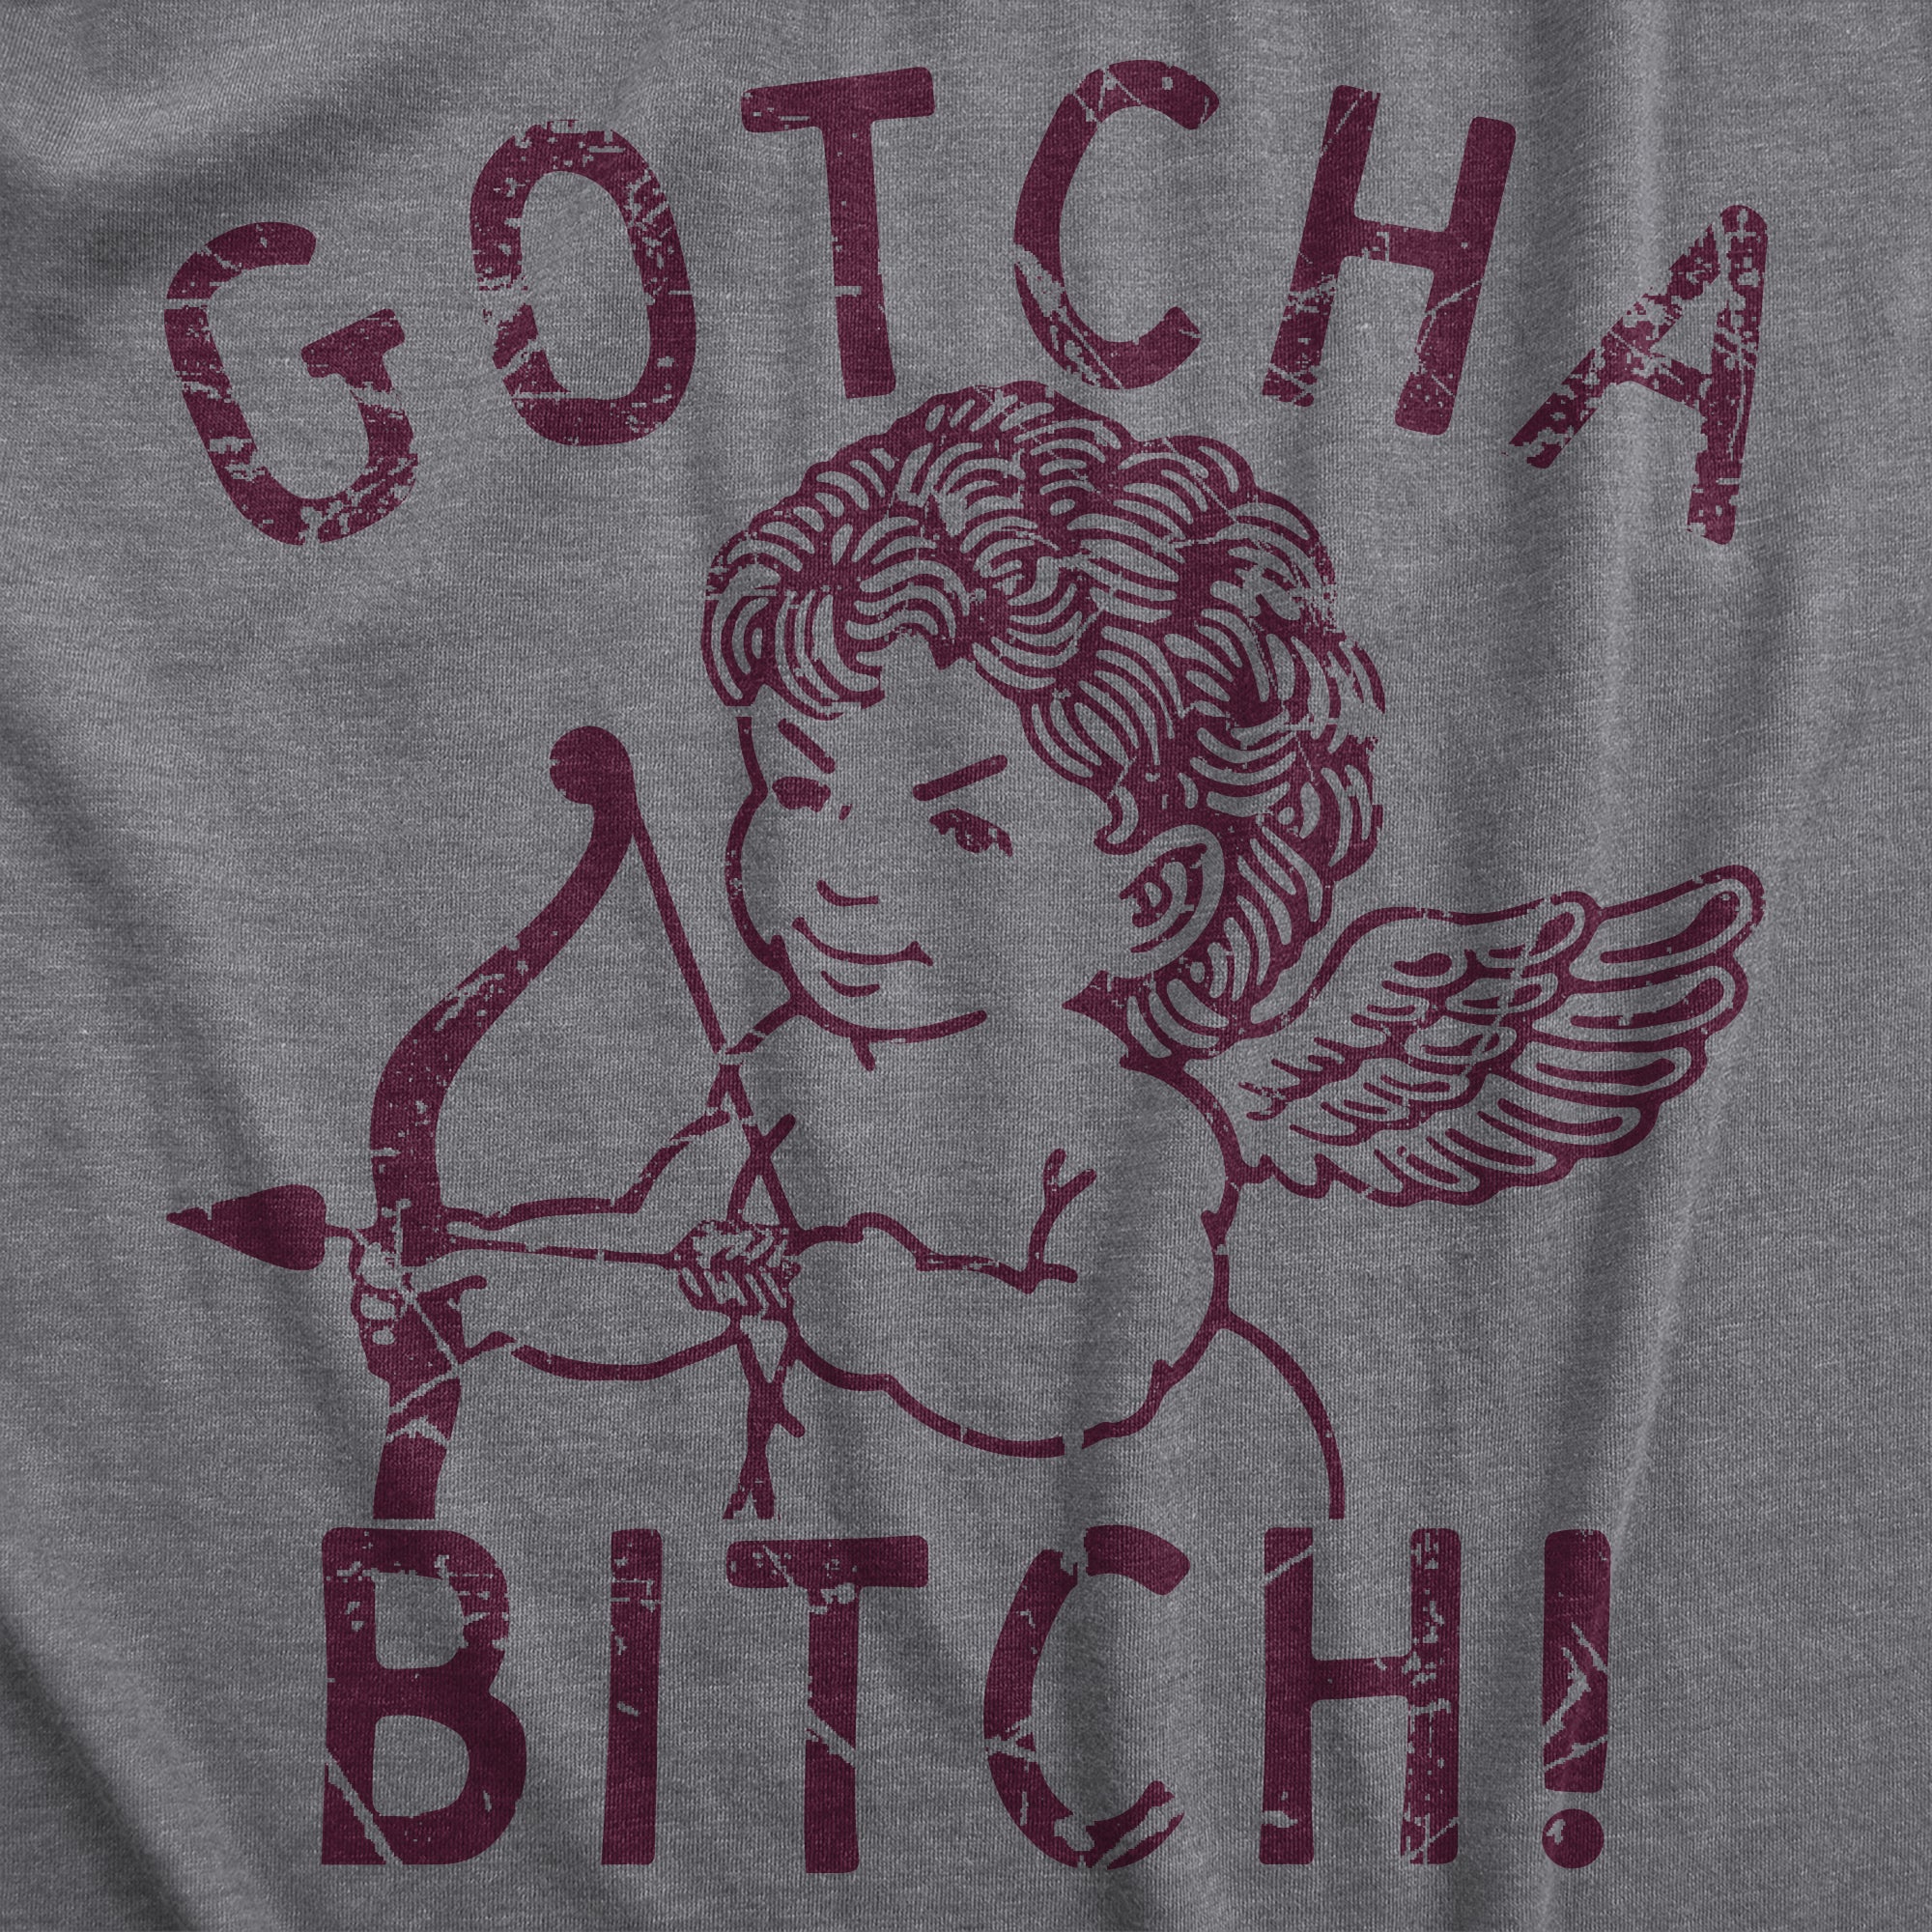 Funny Dark Heather Grey - GOTCHA Gotcha Bitch Womens T Shirt Nerdy Valentine's Day Sarcastic Tee